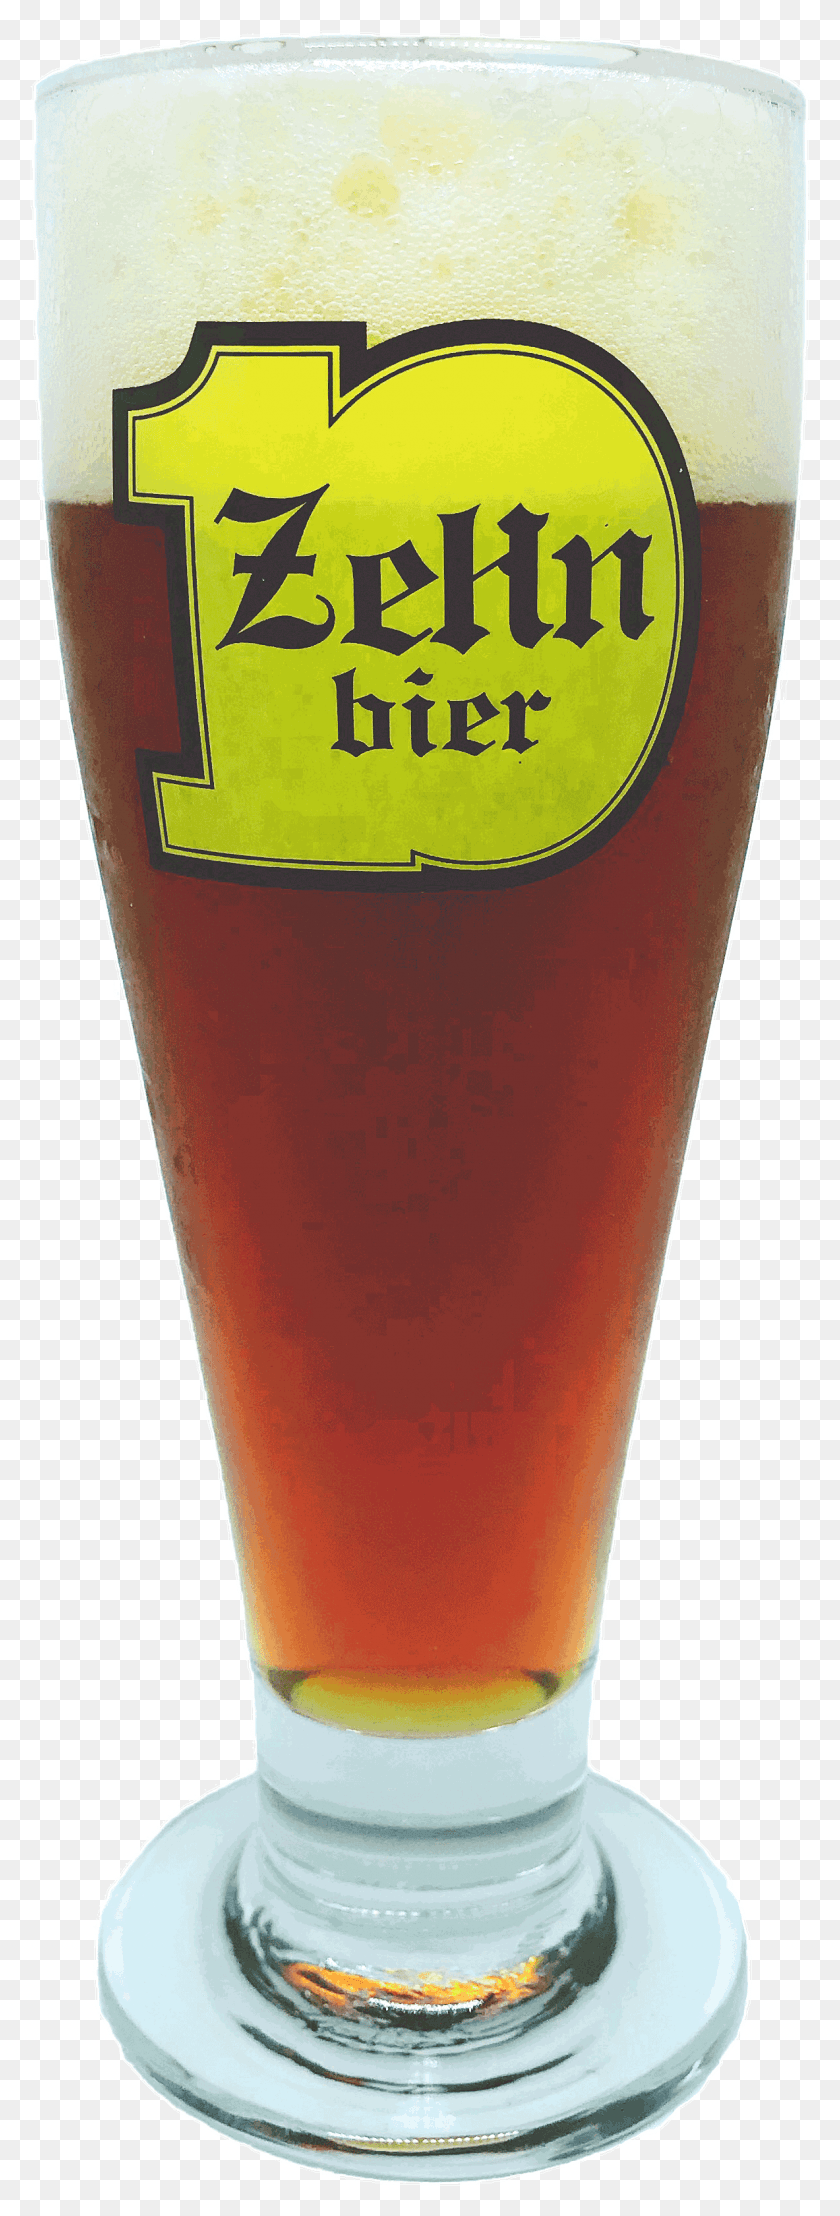 1183x3271 Descubra O Que Torna A Cerveja Artesanal Muito Superior Zehn Bier, Cerveza, Alcohol, Bebidas Hd Png